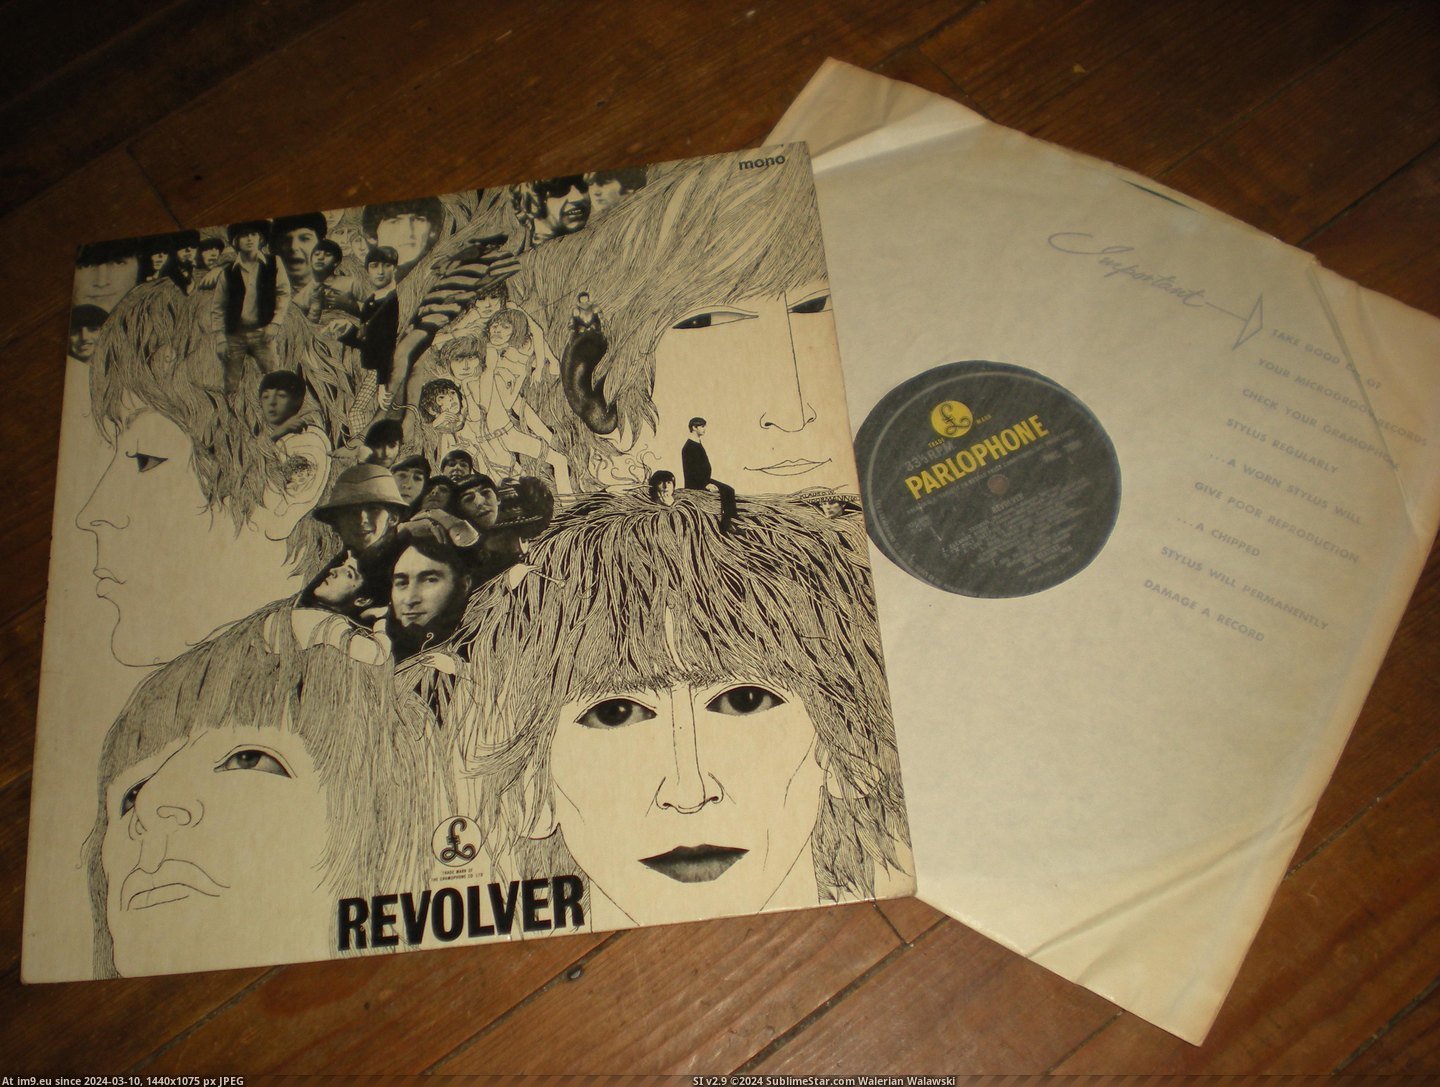 #Day  #Revolver Revolver E J Day 27-06-14 1 Pic. (Image of album new 1))